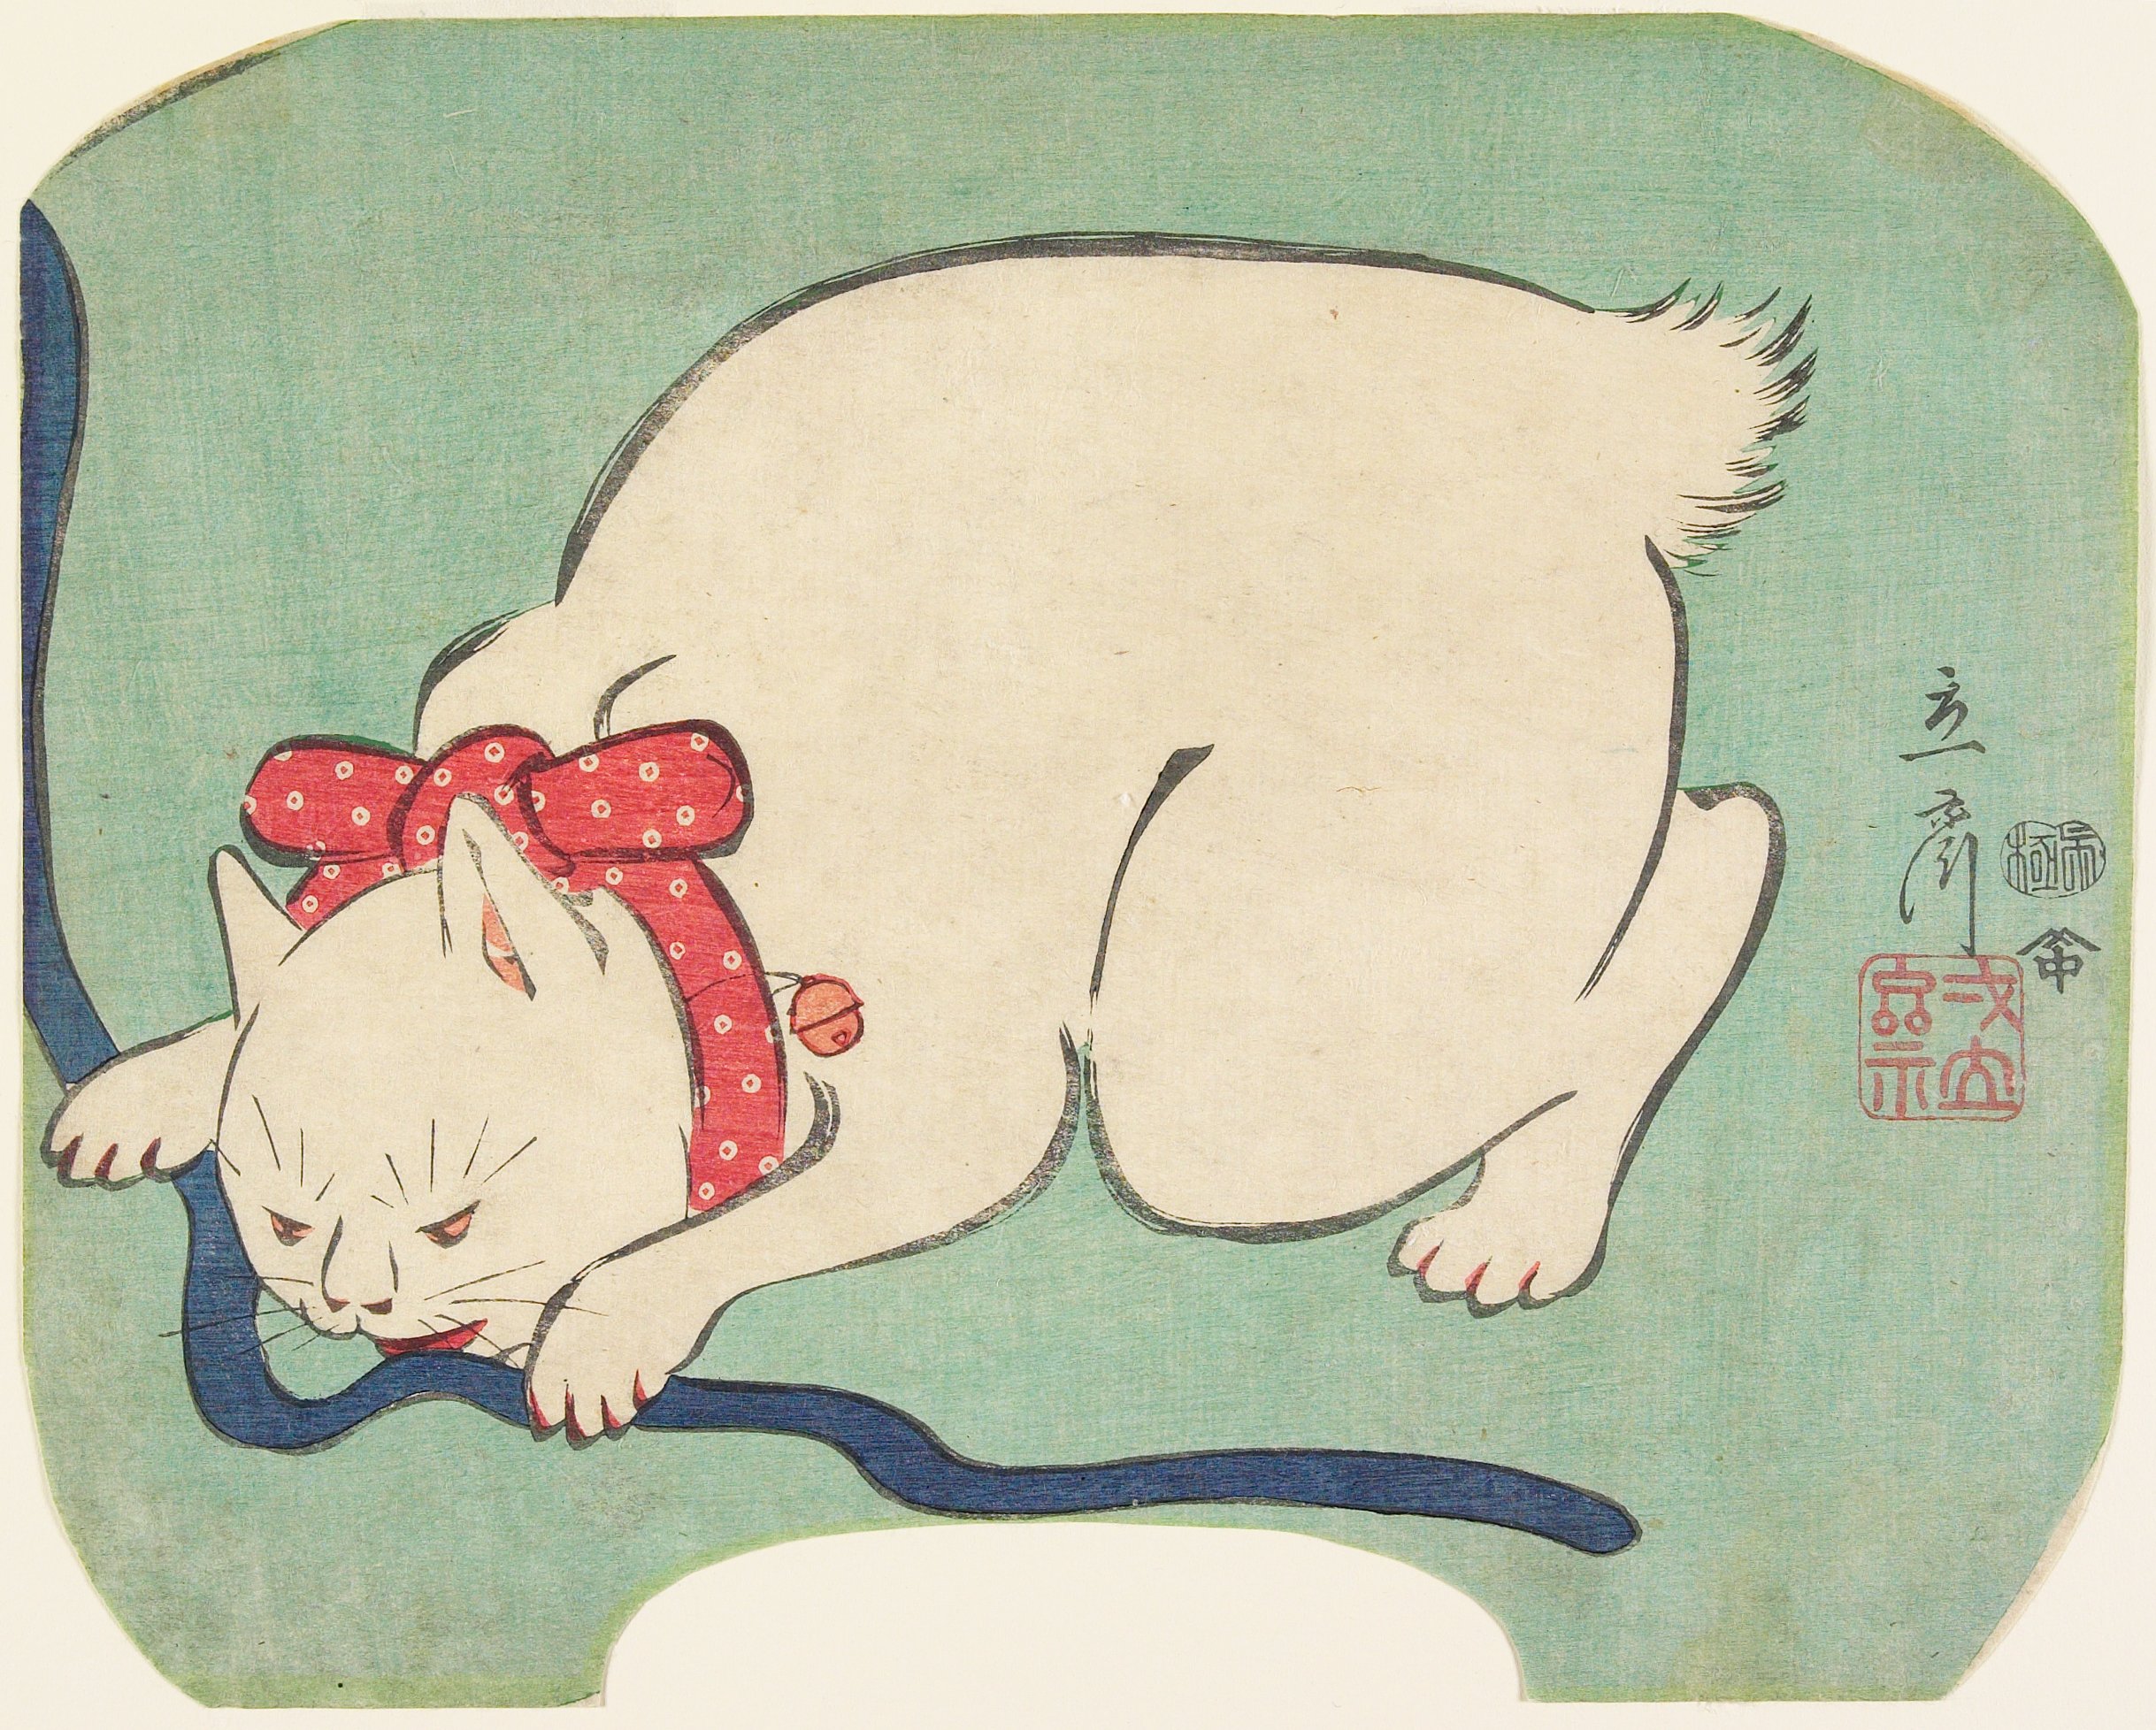 Gato blanco jugando con una cuerda by Hiroshige II - 1863 - 21.3 × 26.7 cm Instituto de Artes de Minneapolis